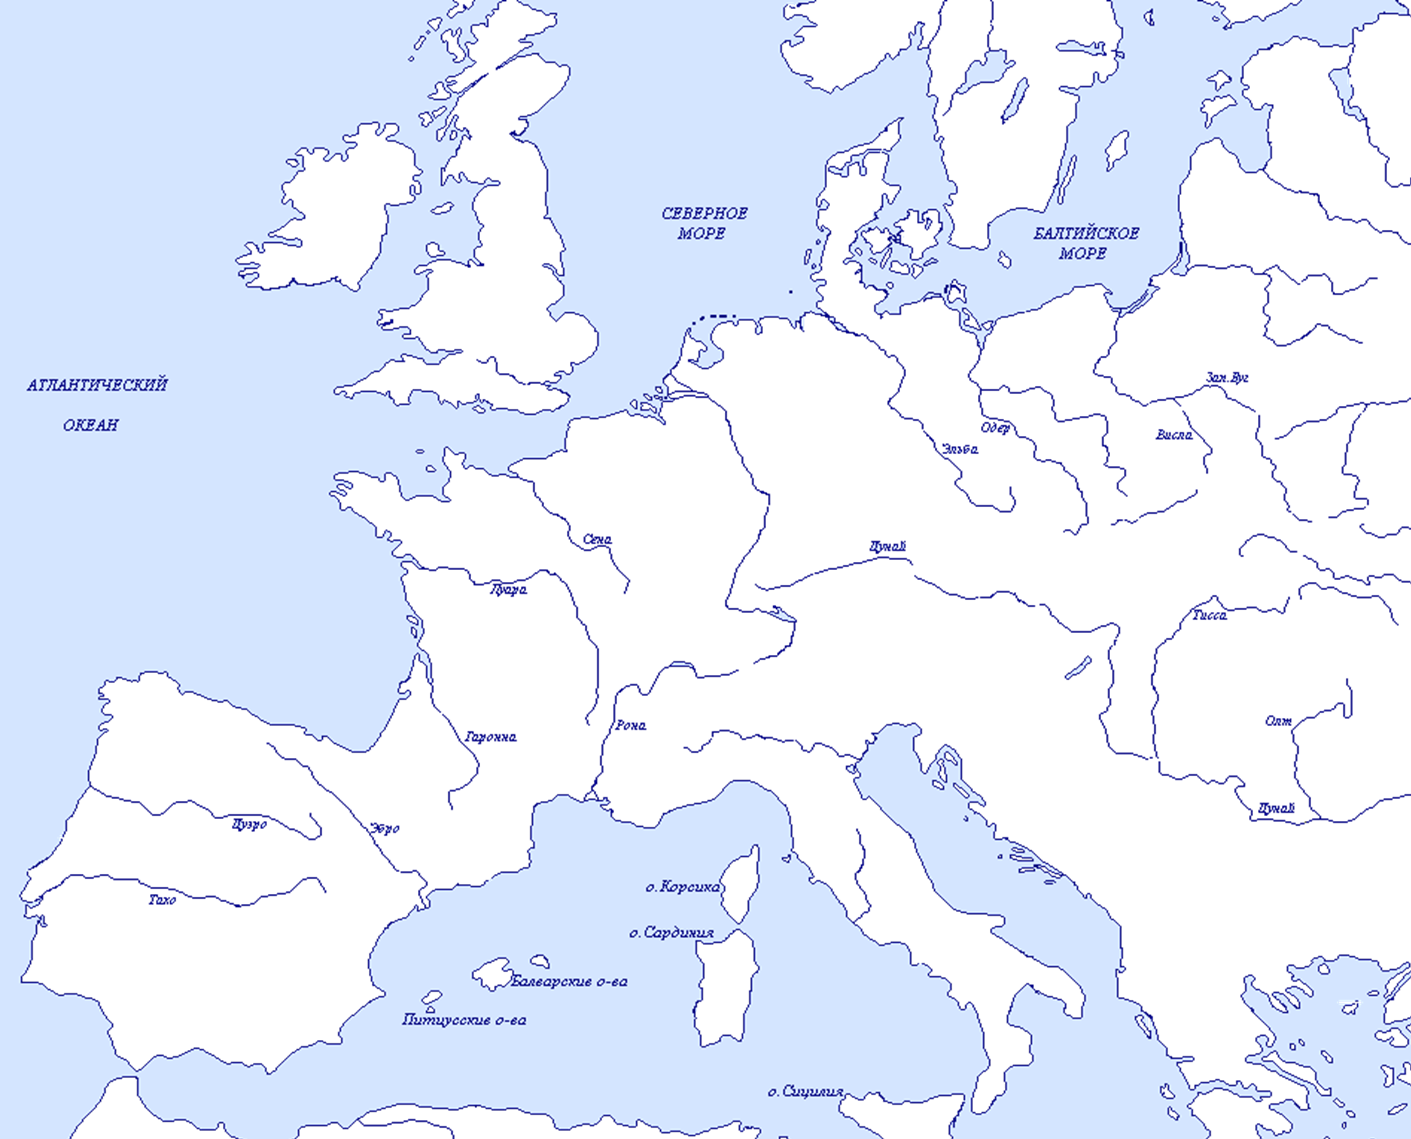 Река в центре европы. Контурная карта Европы для печати а4 политическая. Карта Европы контурная карта. Реки и озера зарубежной Европы на контурной карте. Контурпнаякарта Европы.